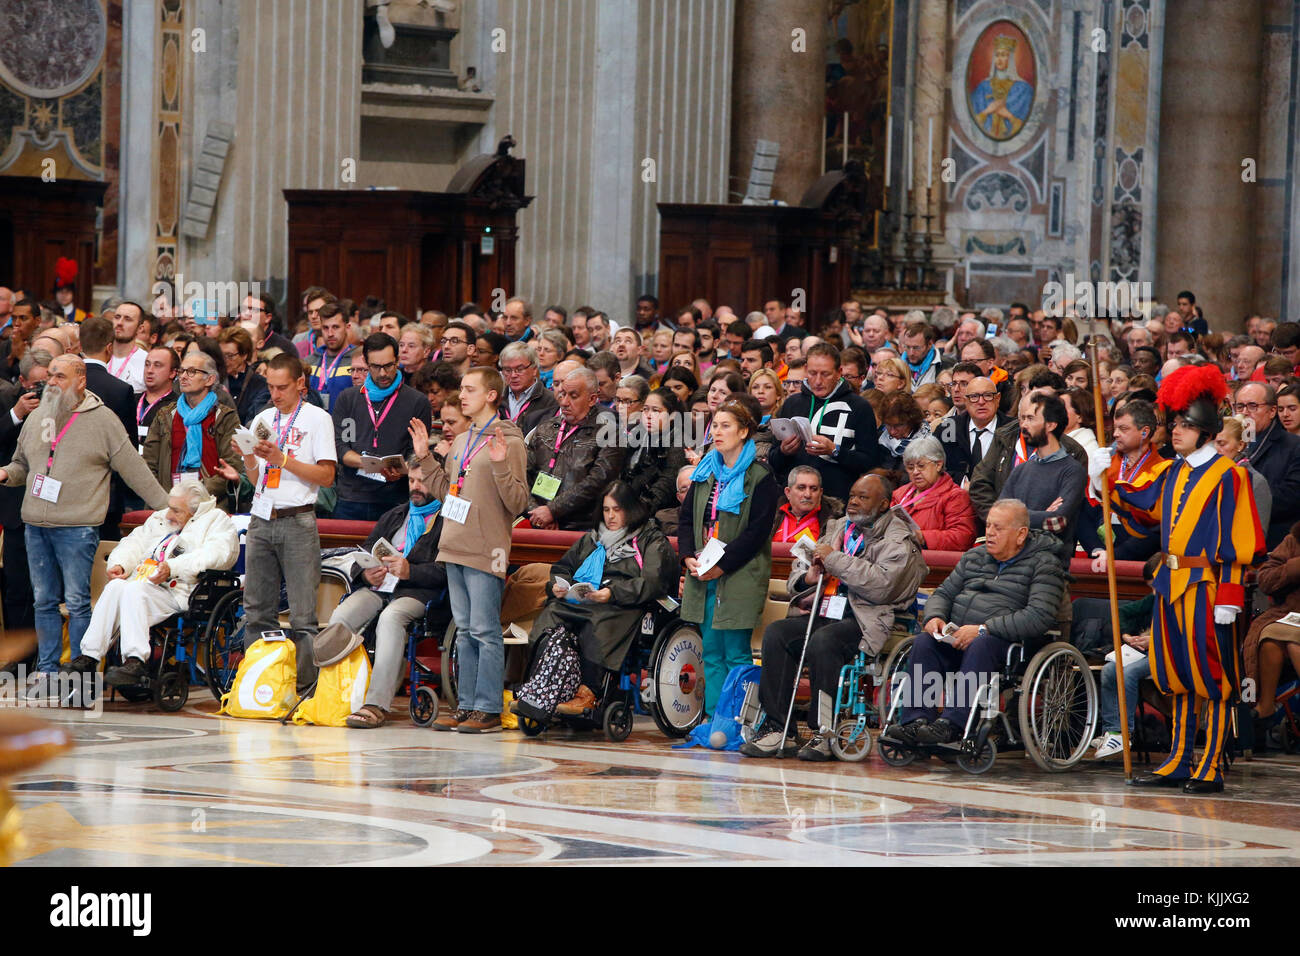 Fratello festival. Messe dans la basilique Saint Pierre, Rome. L'Italie. Banque D'Images